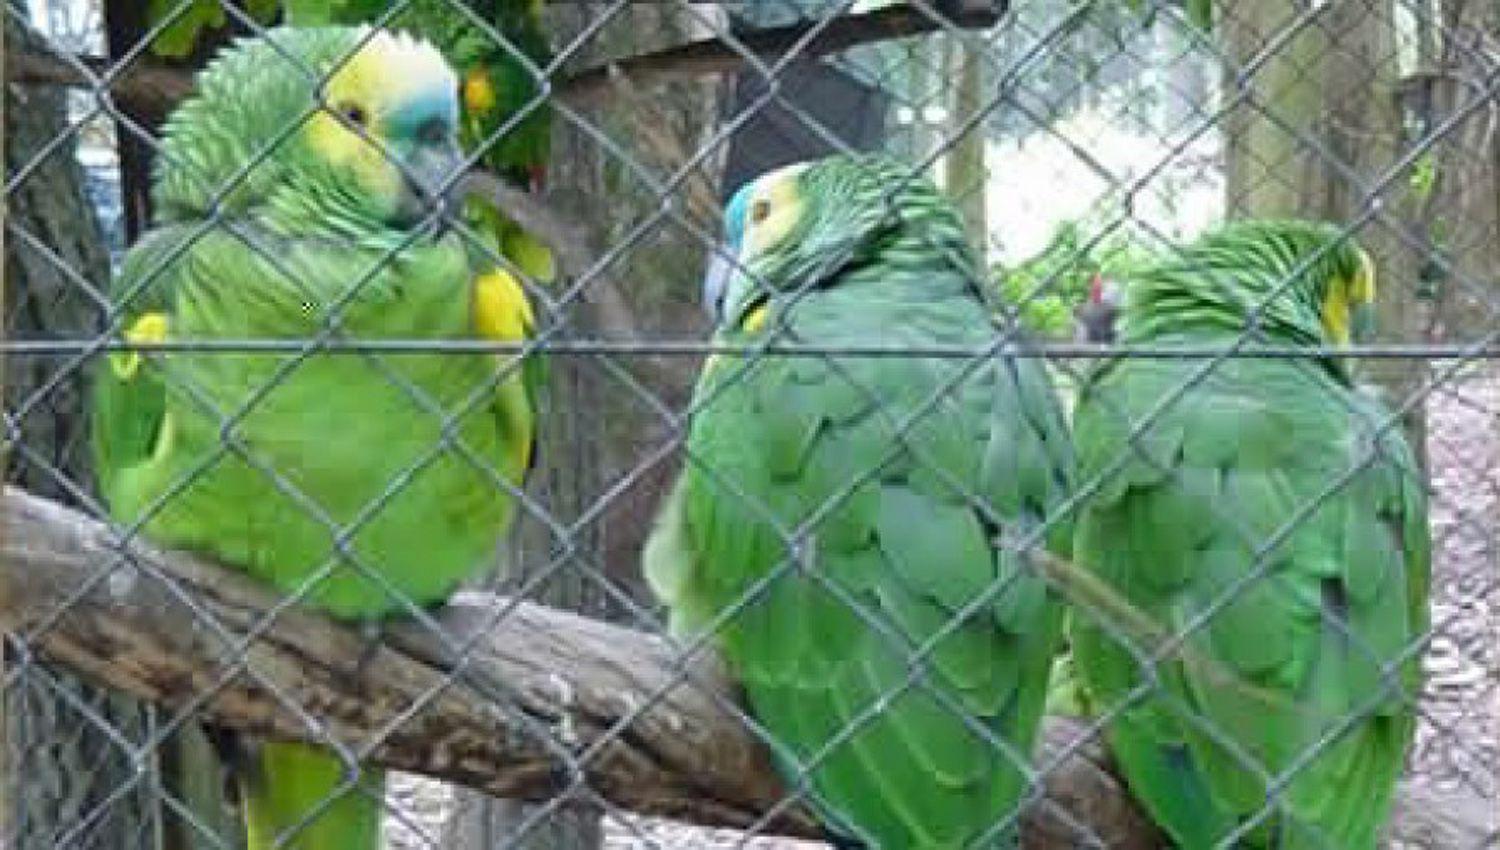 Preocupacioacuten en Buenos Aires por brote de bacteria en aves que provocoacute neumoniacutea en humanos